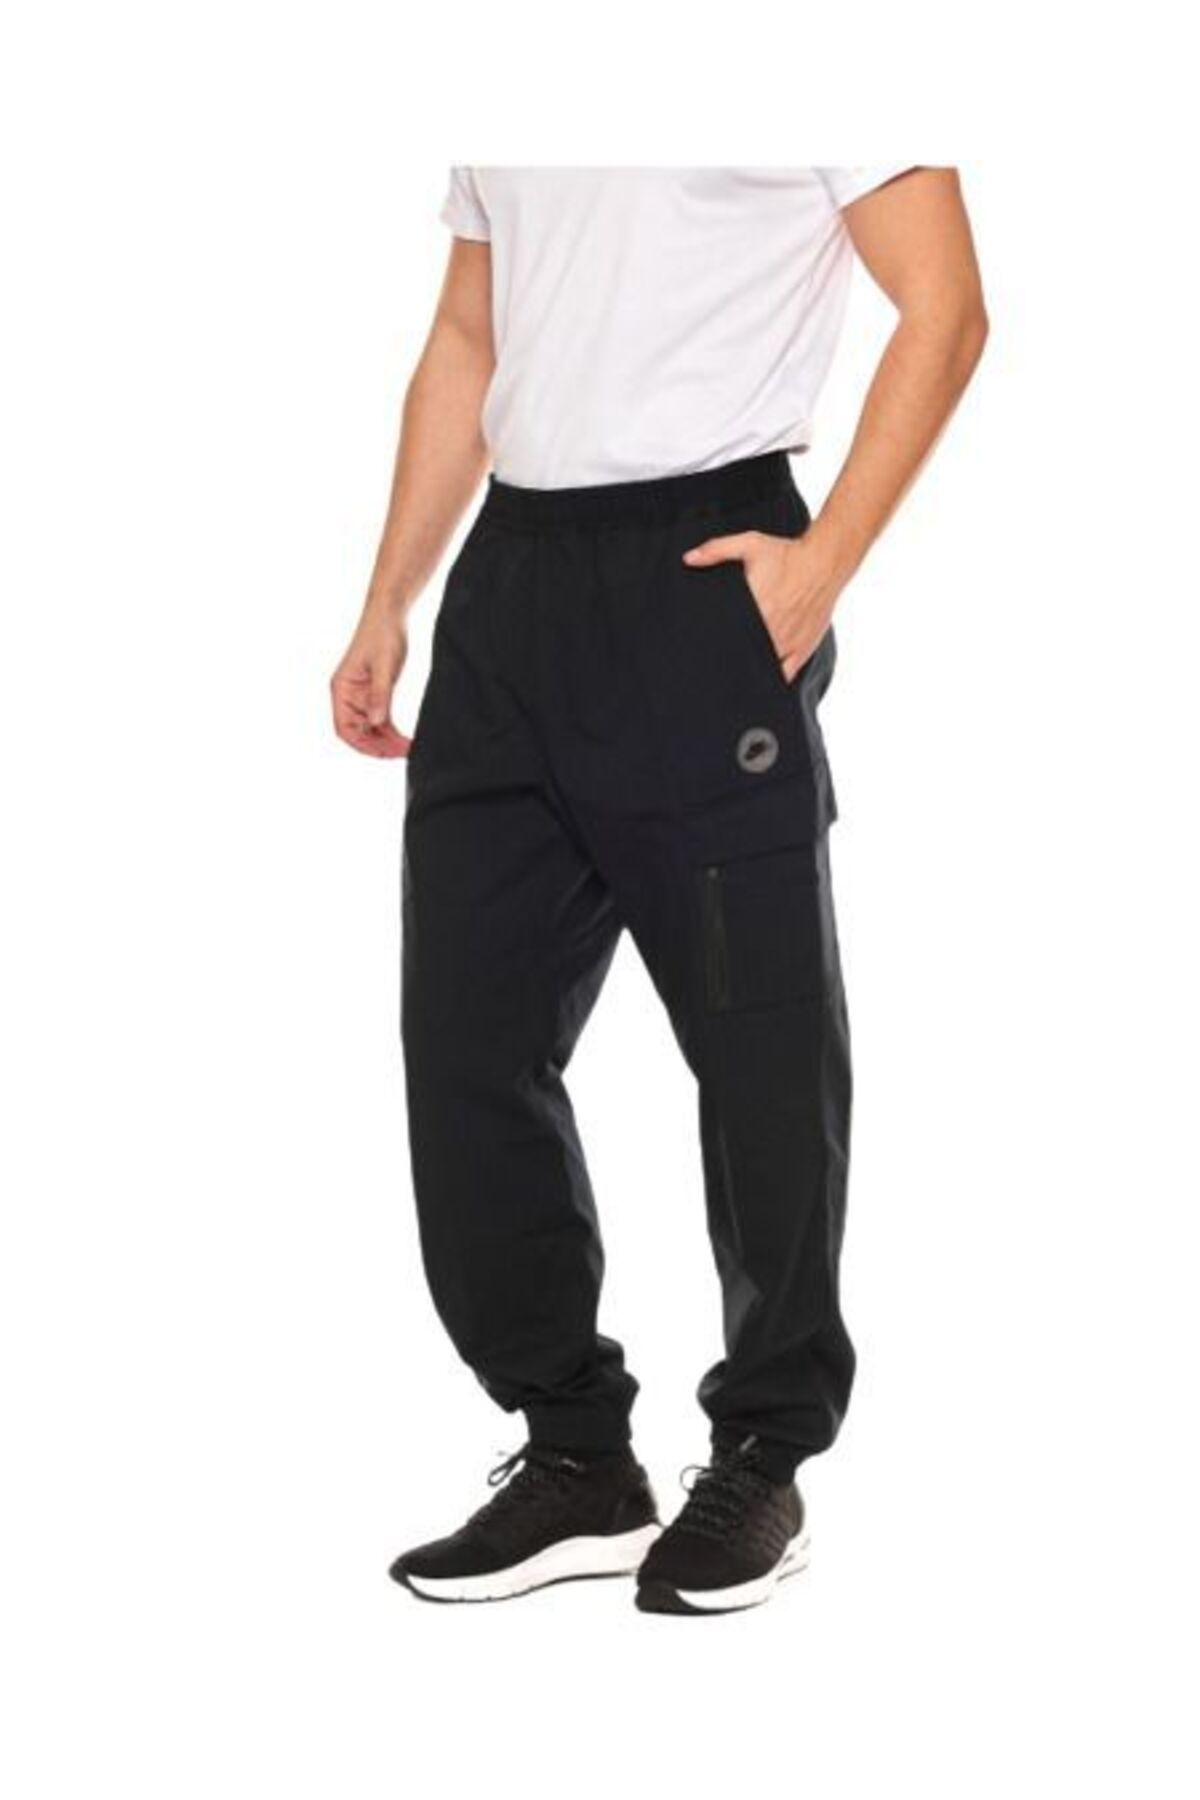 Nike Sportswear Woven Pant Erkek Pantolon Fb2191-010